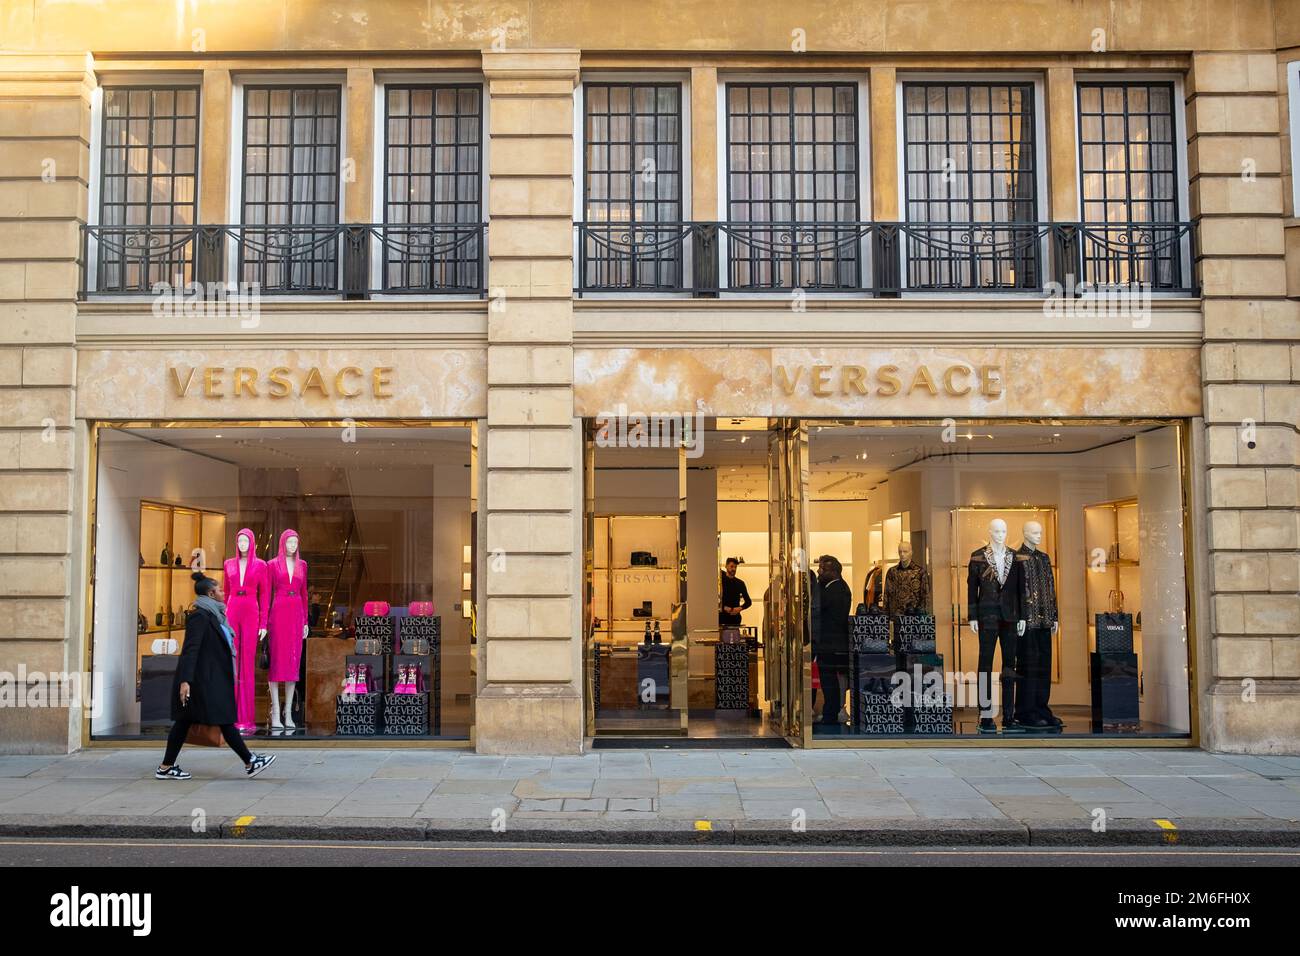 Ten einde raad het formulier Uittrekken Versace sloane street hi-res stock photography and images - Alamy